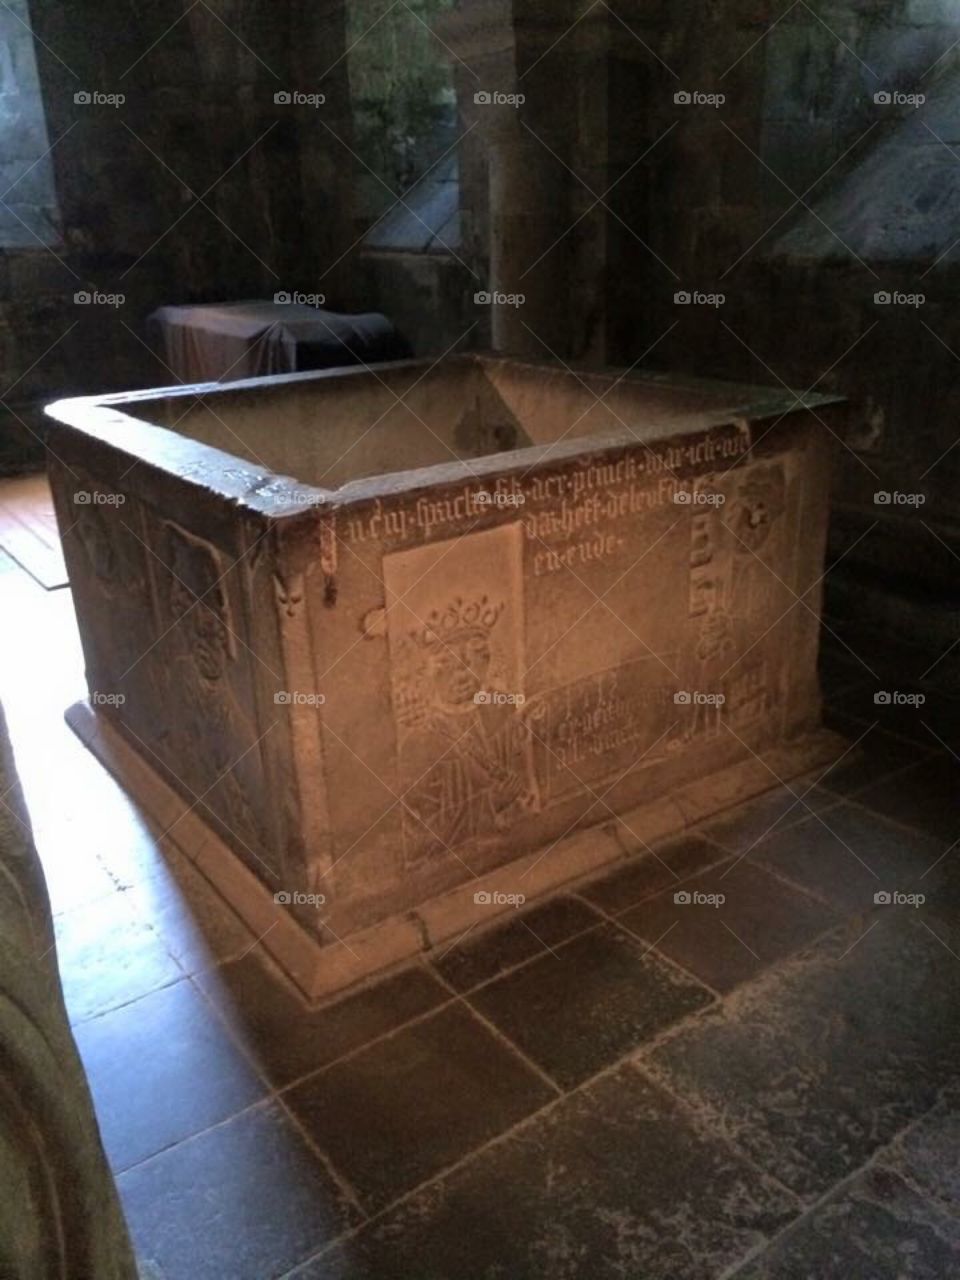 A well inside a crypt